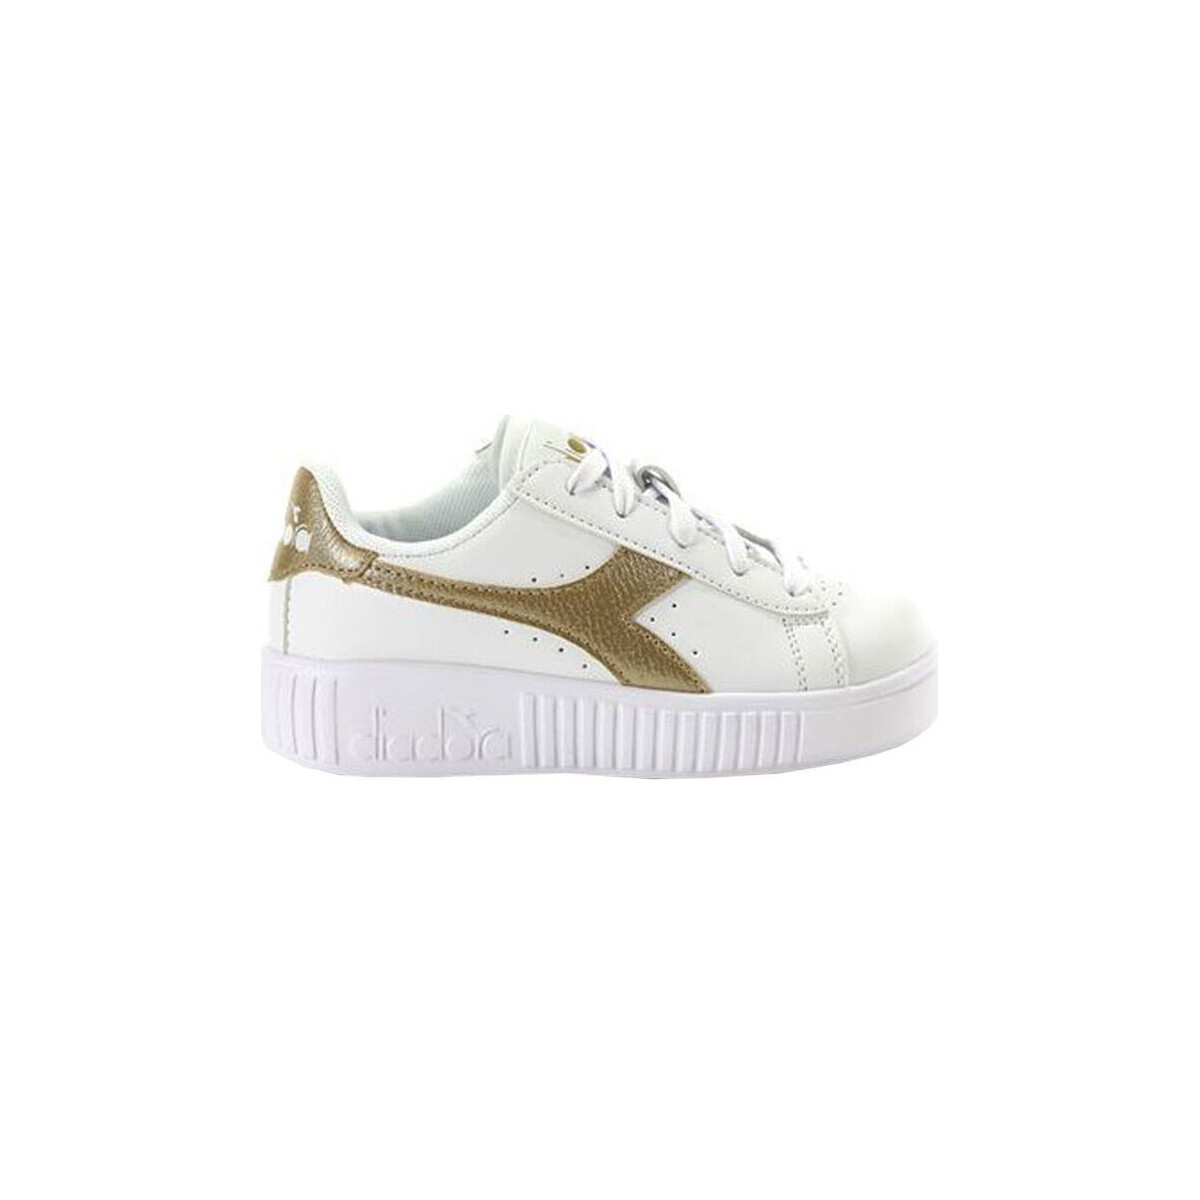 Παπούτσια Παιδί Sneakers Diadora 101.176596 01 C1070 White/Gold Gold